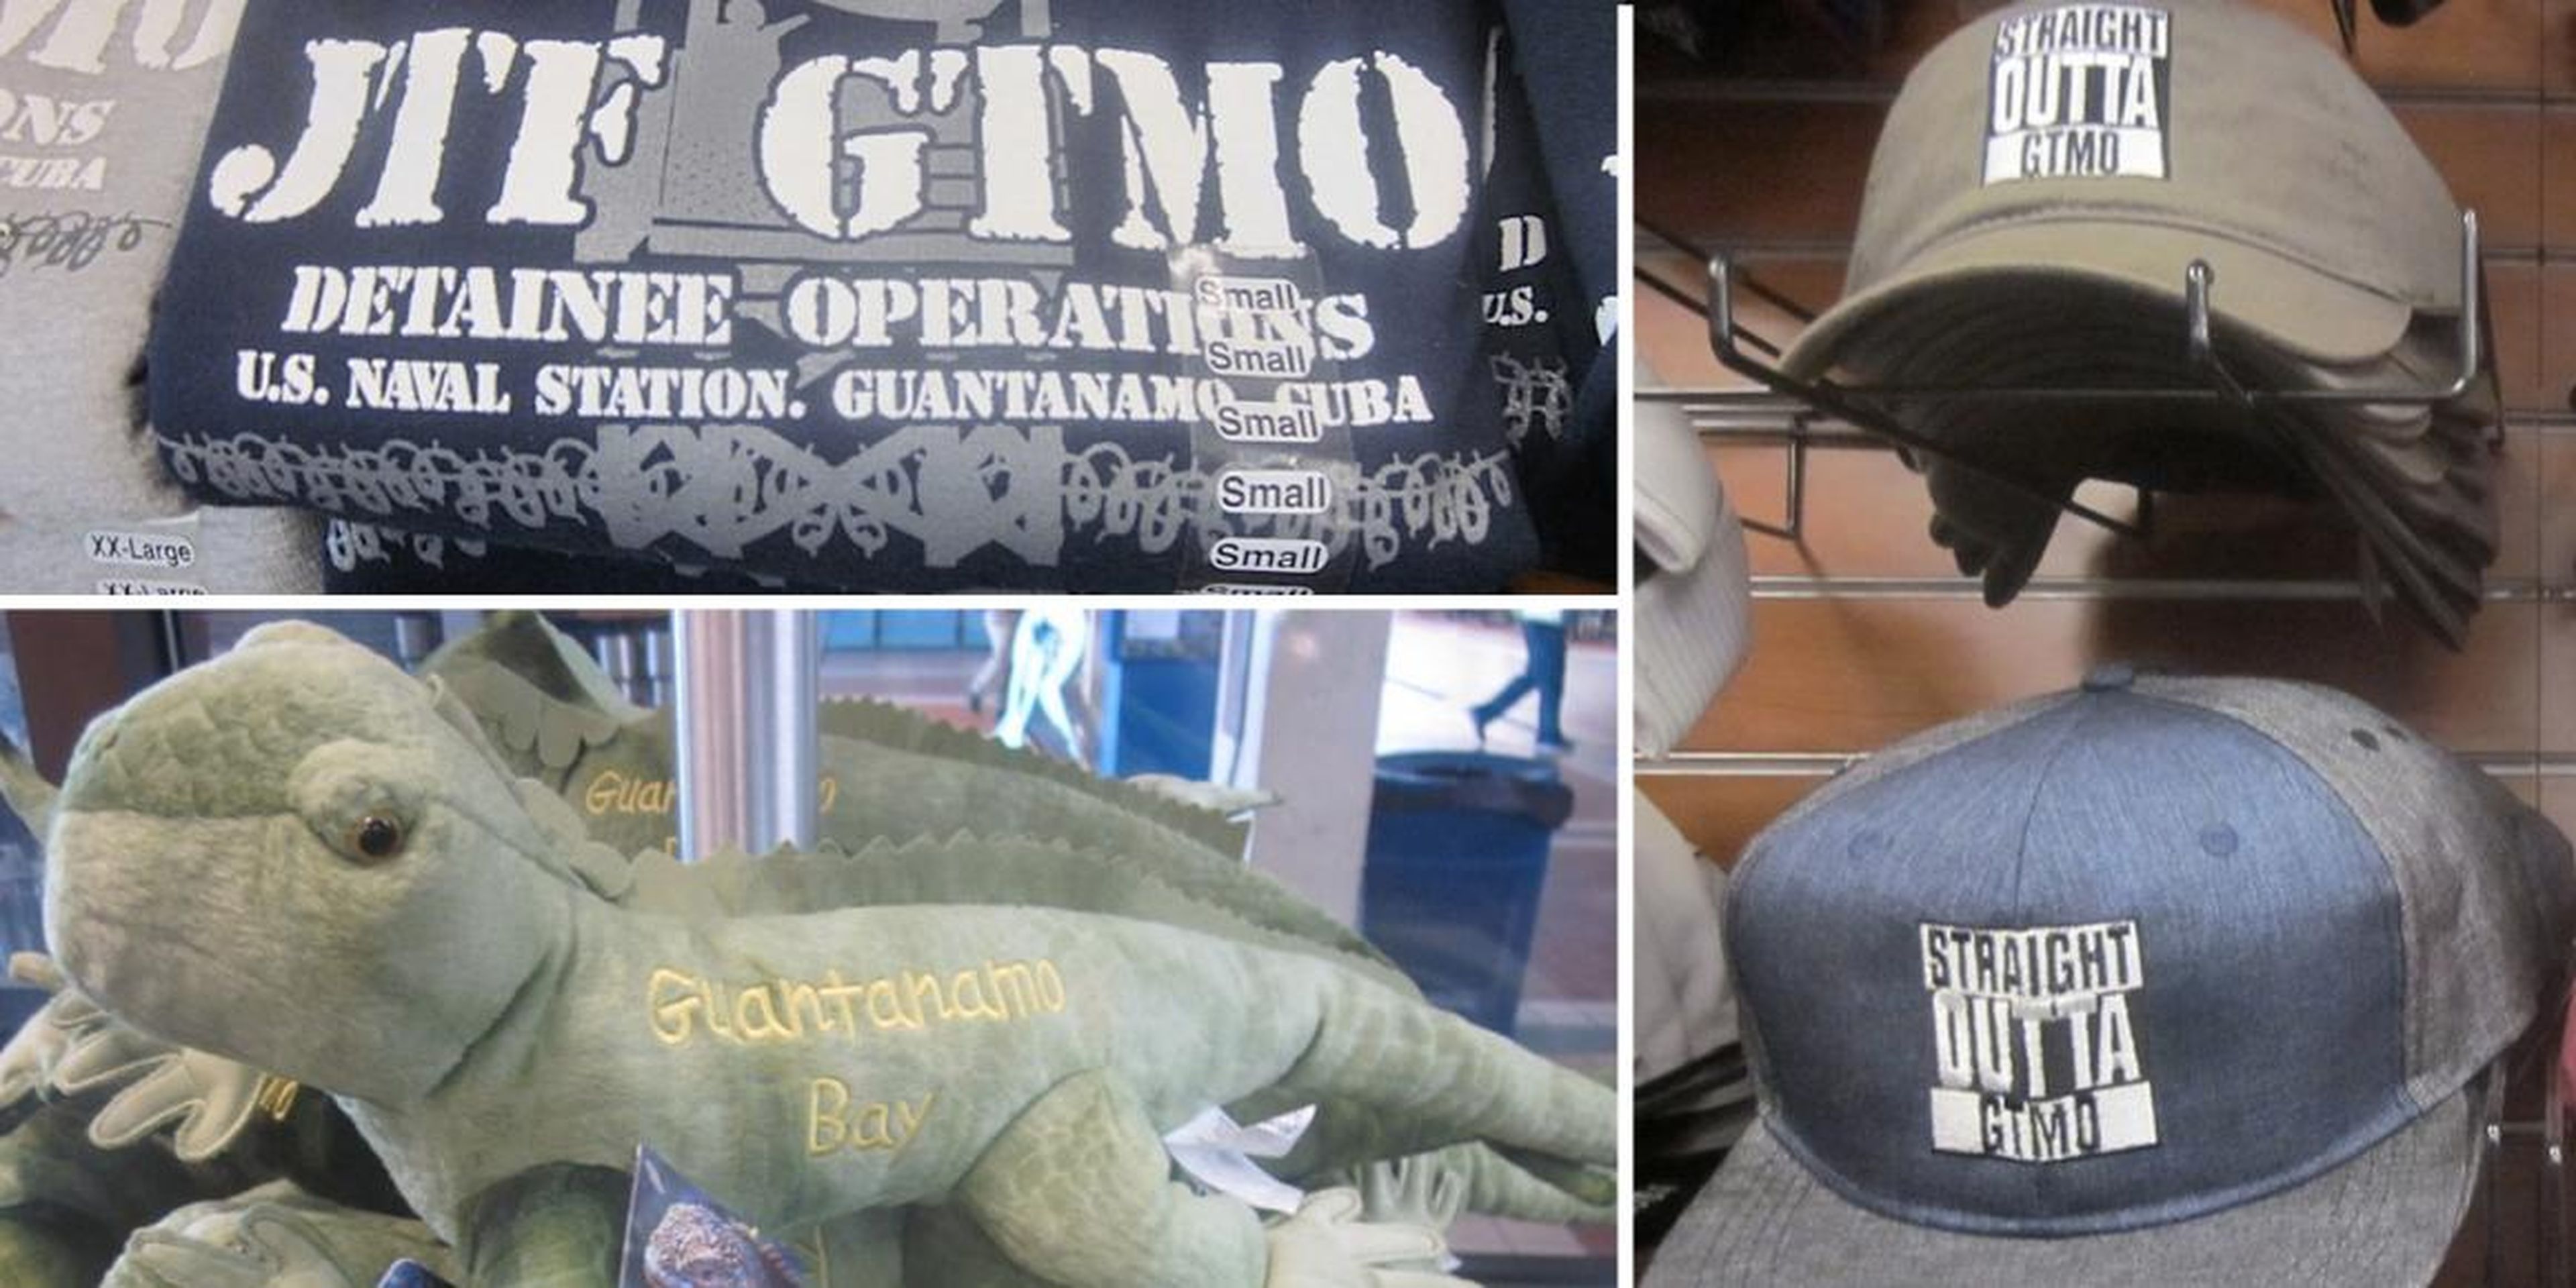 La imagen muestra los artículos a la venta en la tienda de regalos de la marina estadounidense en la Bahía de Guantánamo, Cuba.